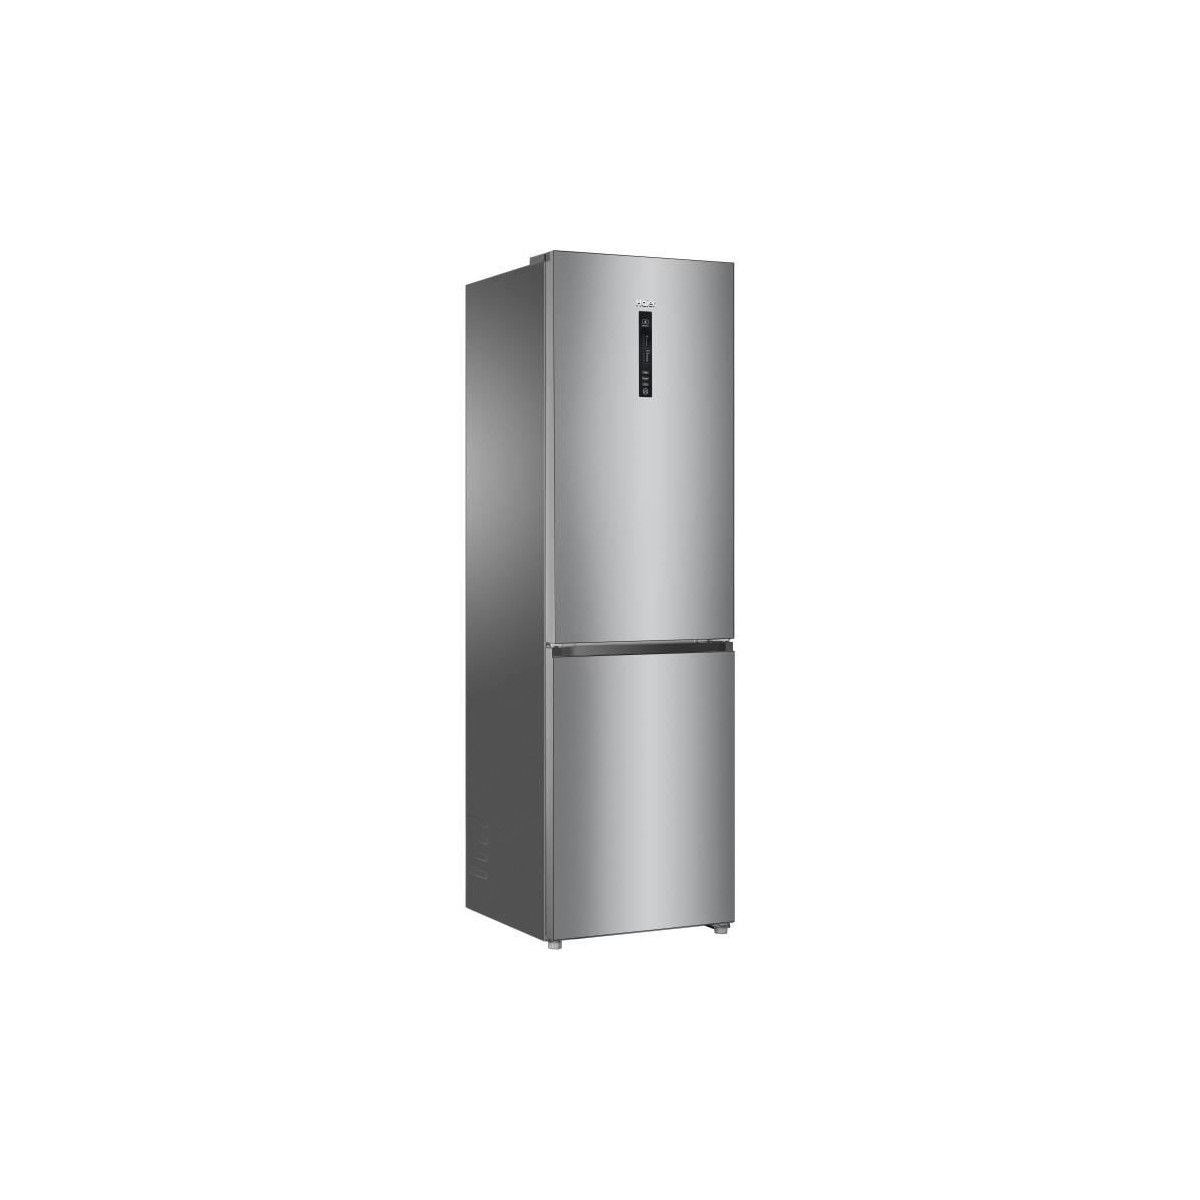 HAIER HRF-635CSHJ - refrigerateur combi no frost froid ventile - 340L - A+  - L 60 cm - silver HAIER